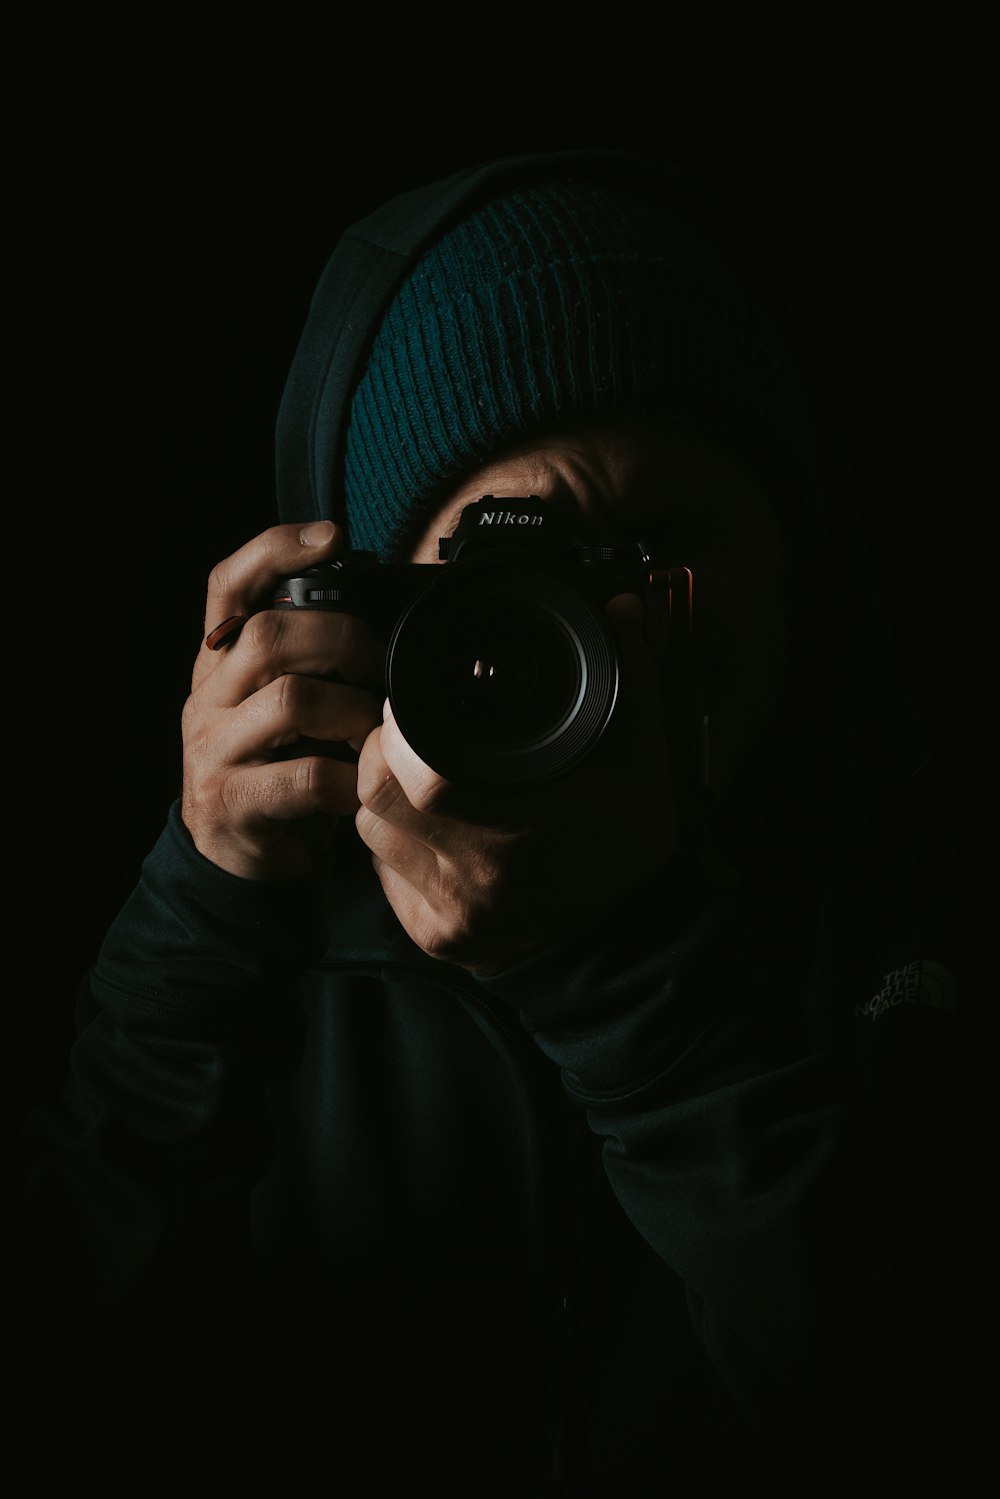 Persona sosteniendo una cámara DSLR Nikon negra